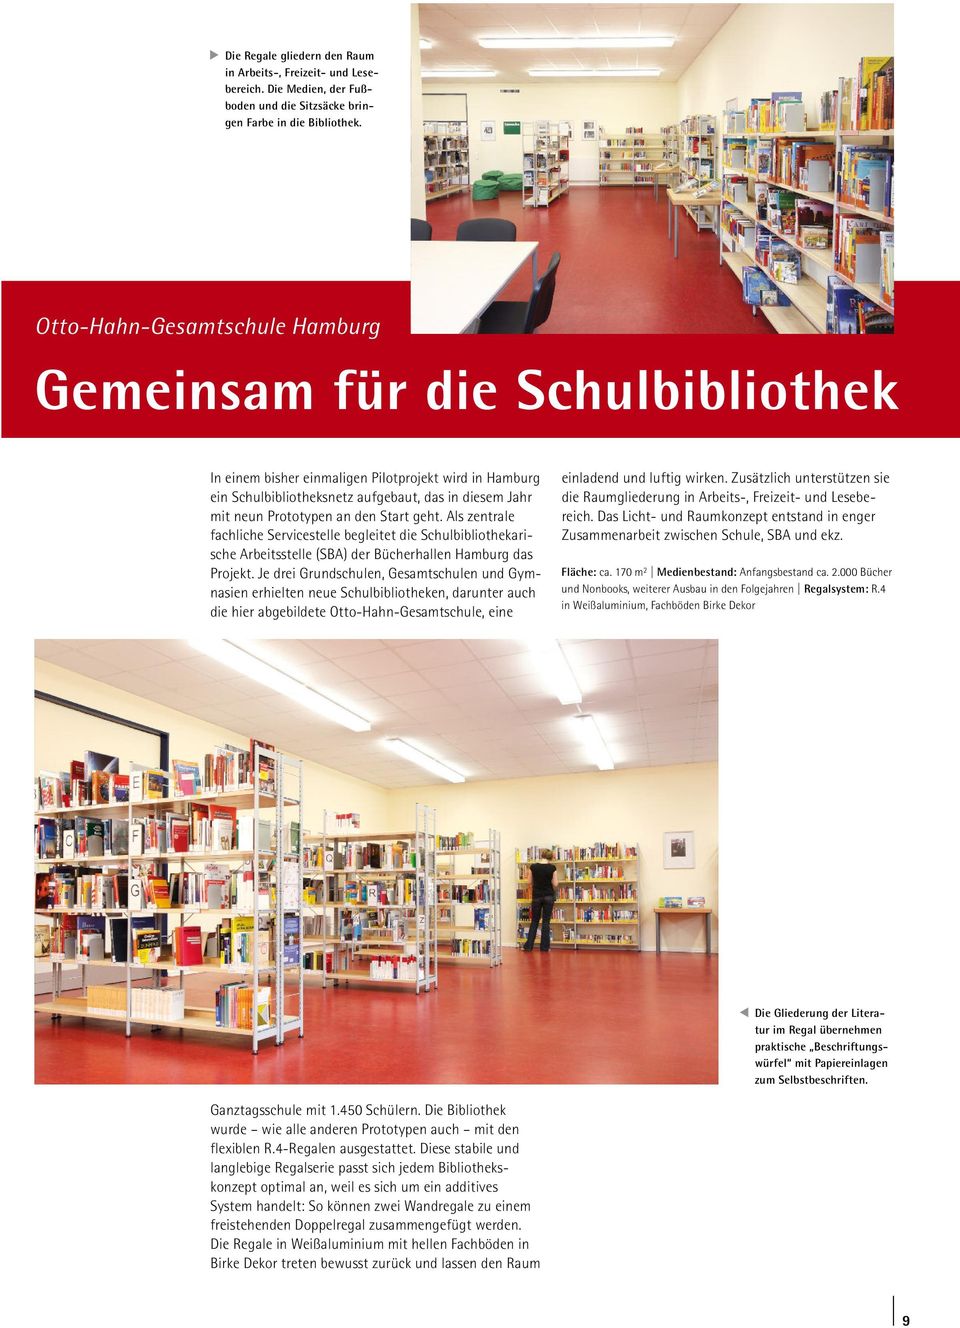 den Start geht. Als zentrale fachliche Servicestelle begleitet die Schulbibliothekarische Arbeitsstelle (SBA) der Bücherhallen Hamburg das Projekt.